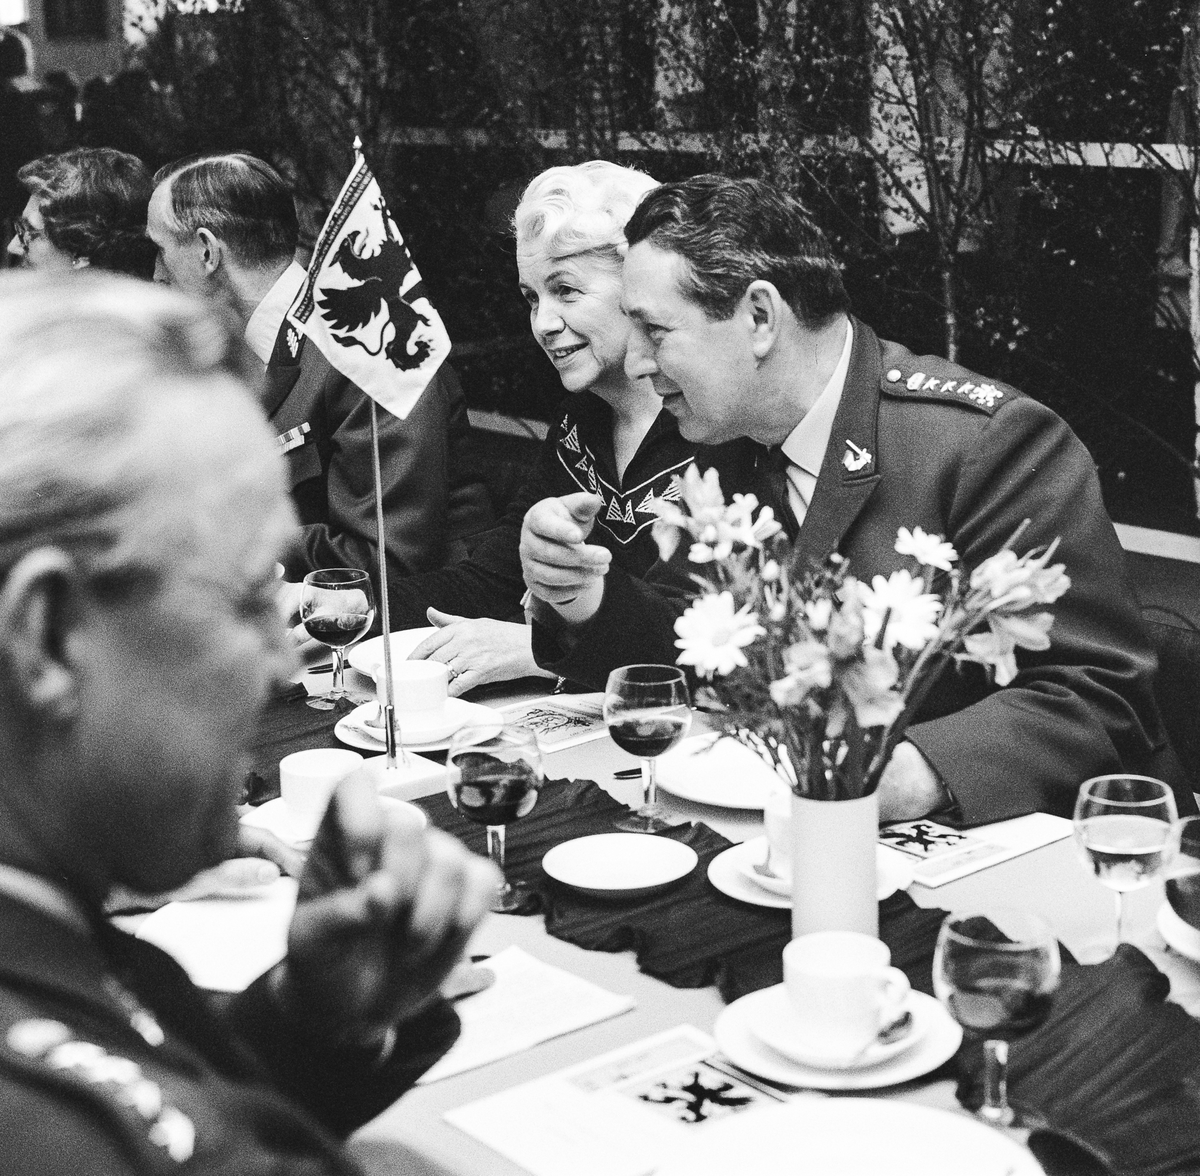 Regementschefen, öv1. Nils Stenqvist i förgrunden. Utbildningschefen, överste Ragnar Tauvon med hustru på andra sidan bordet.